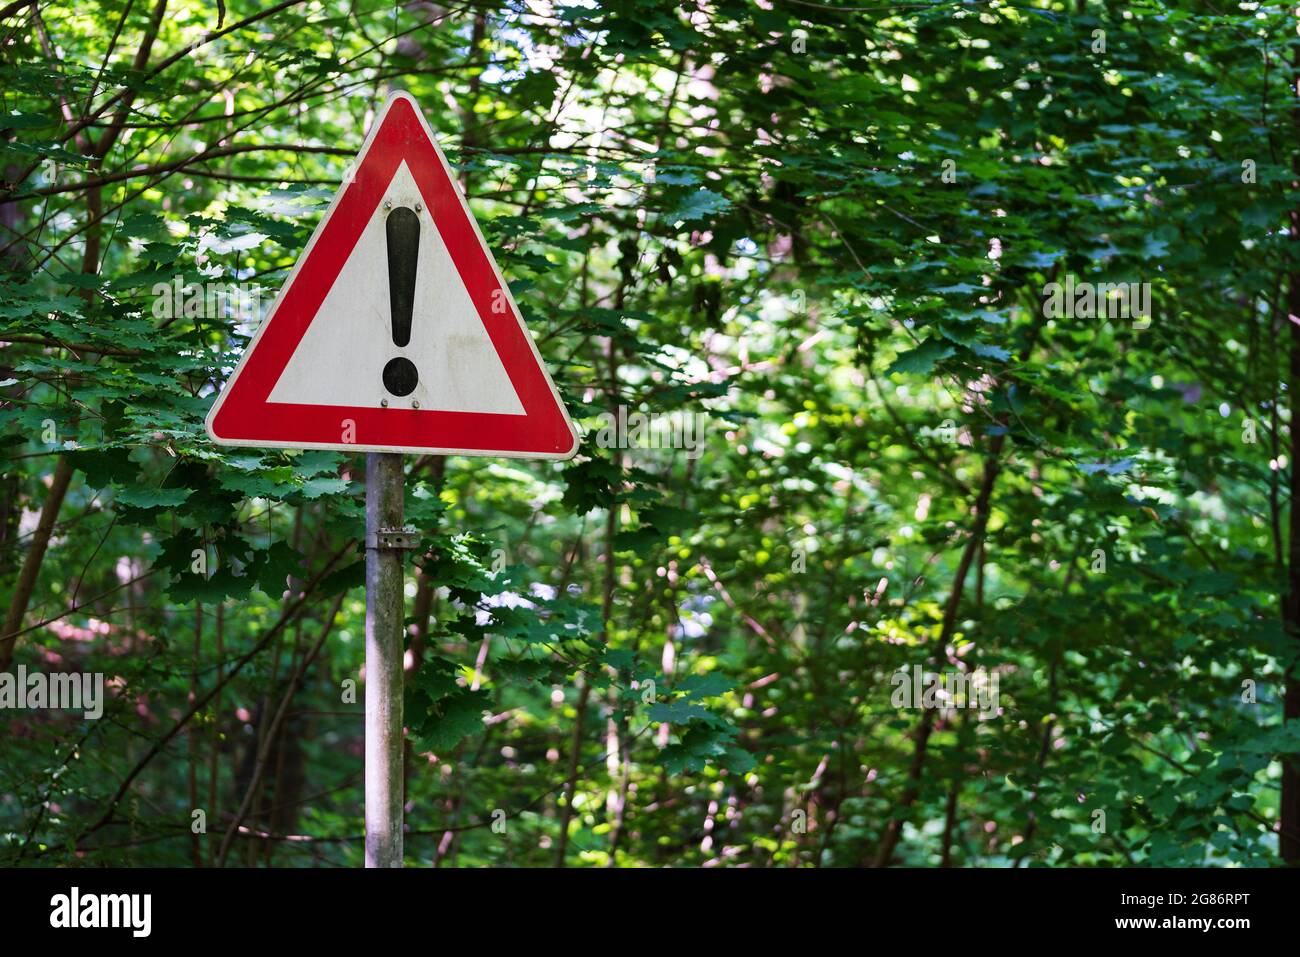 Rot-weißes Warnschild mit Ausrufezeichen gegen grüne Bäume Stockfoto